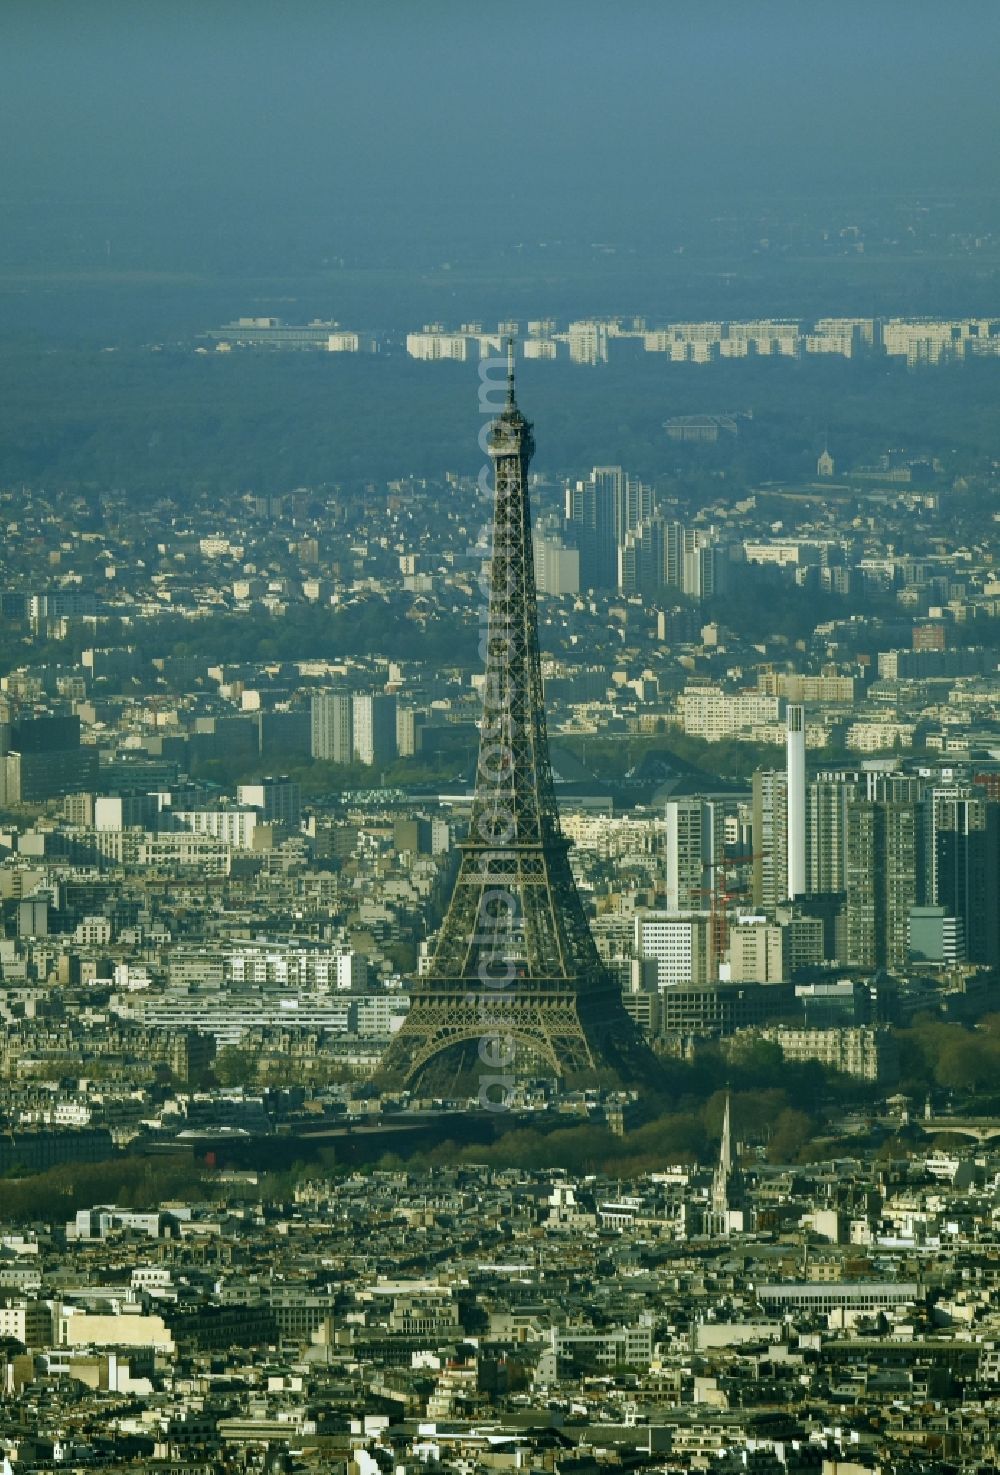 Aerial photograph Paris - The Eiffel Tower Tour Eiffel and the Triumphal Arch Arc de Triomphe in Paris in Ile-de-France, France